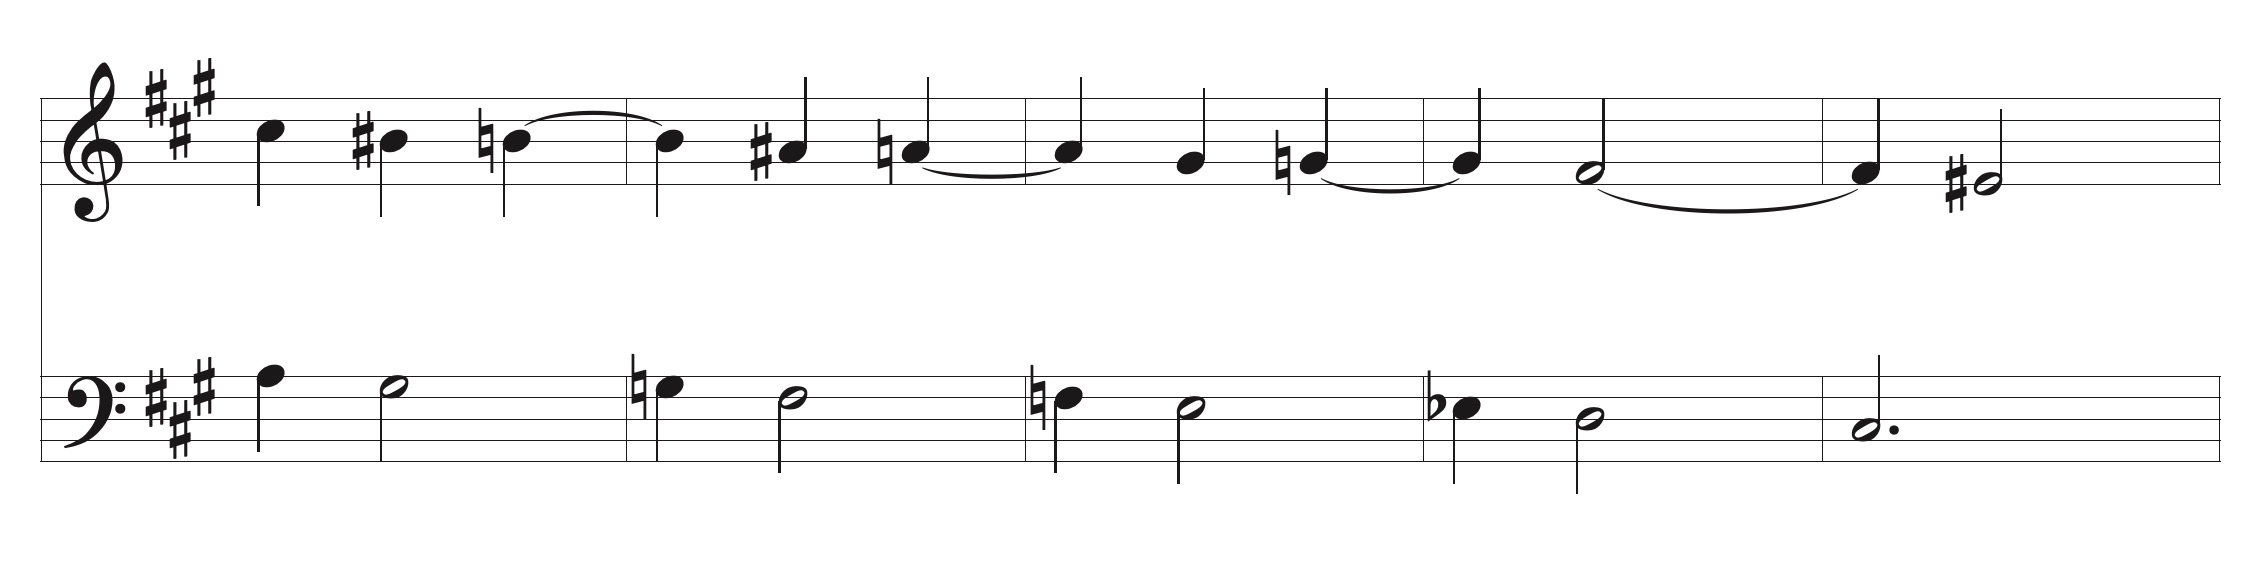 chopin sequence mazurka op. 6.1 000.jpeg